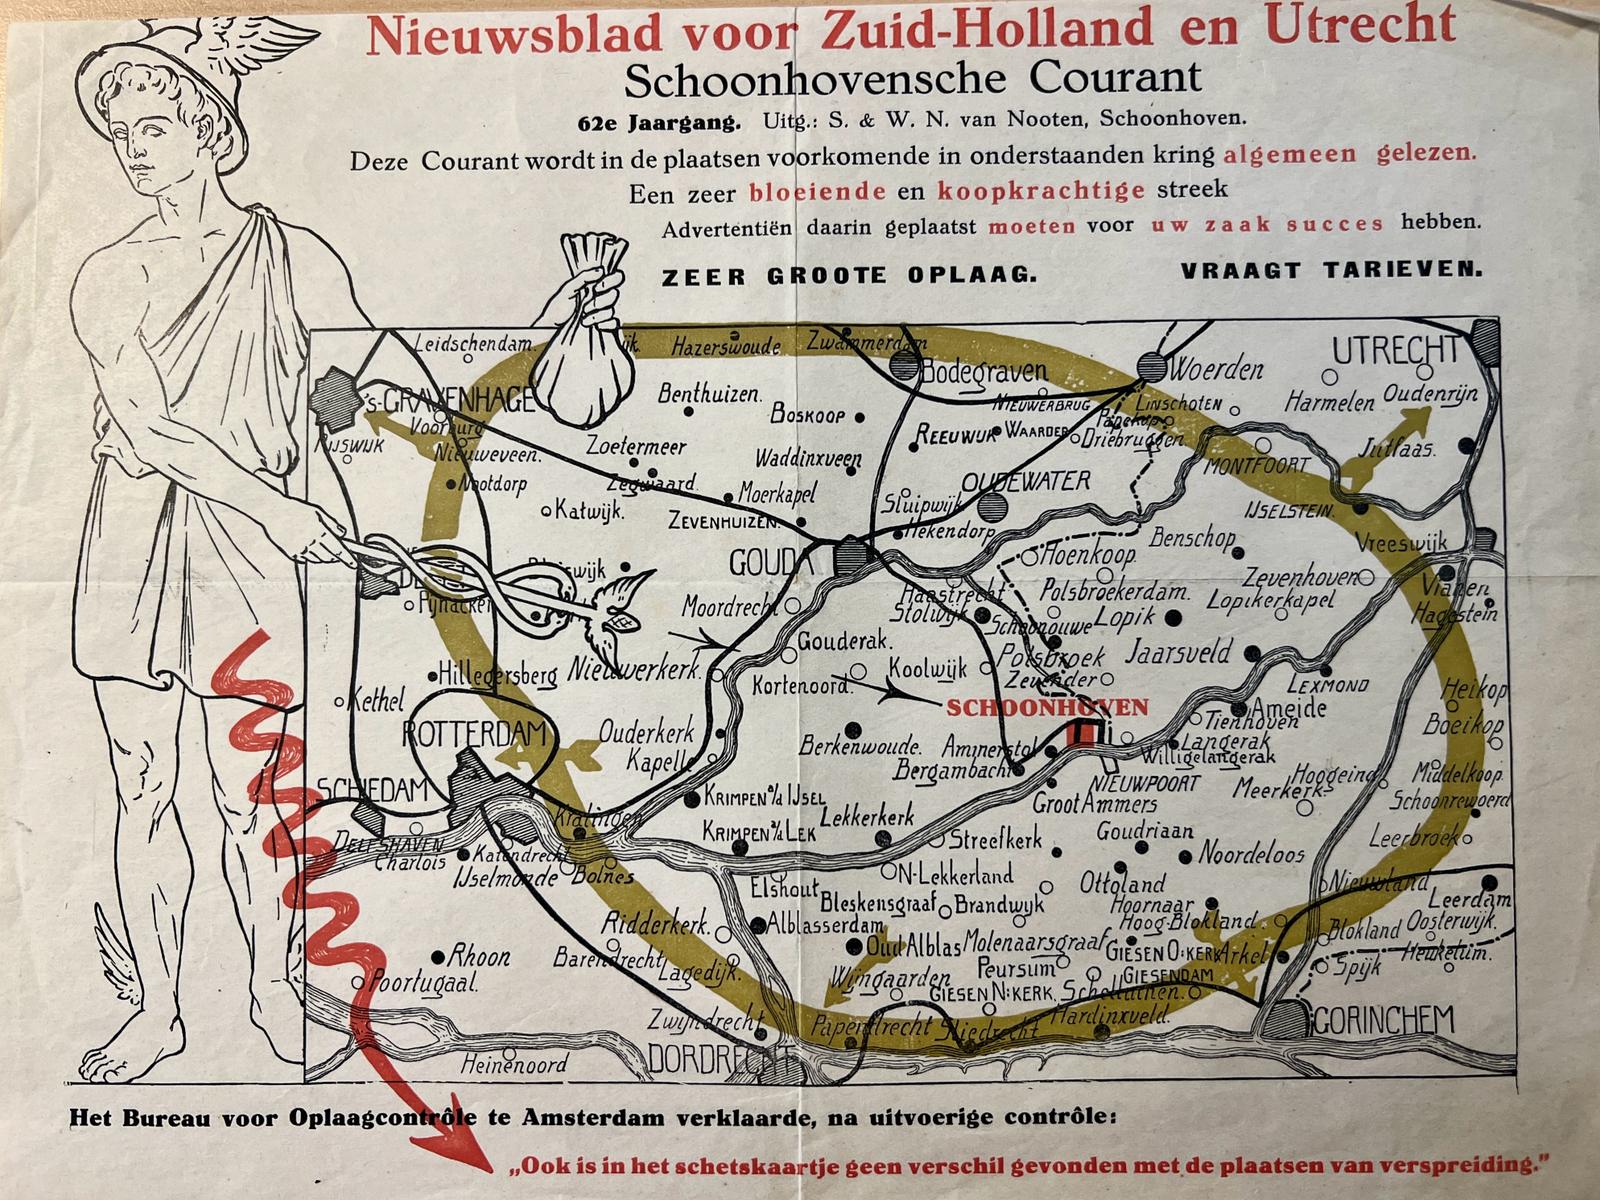 [Newspaper 1962] - Newspaper cartography 1962 | Schetskaartje behorend bij Nieuwsblad voor Zuid-Holland en Utrecht Schoonhovensche courant, 62e jaargang, Van Nooten Schoonhoven, 1 p. Decorative map in red, black and green colours.